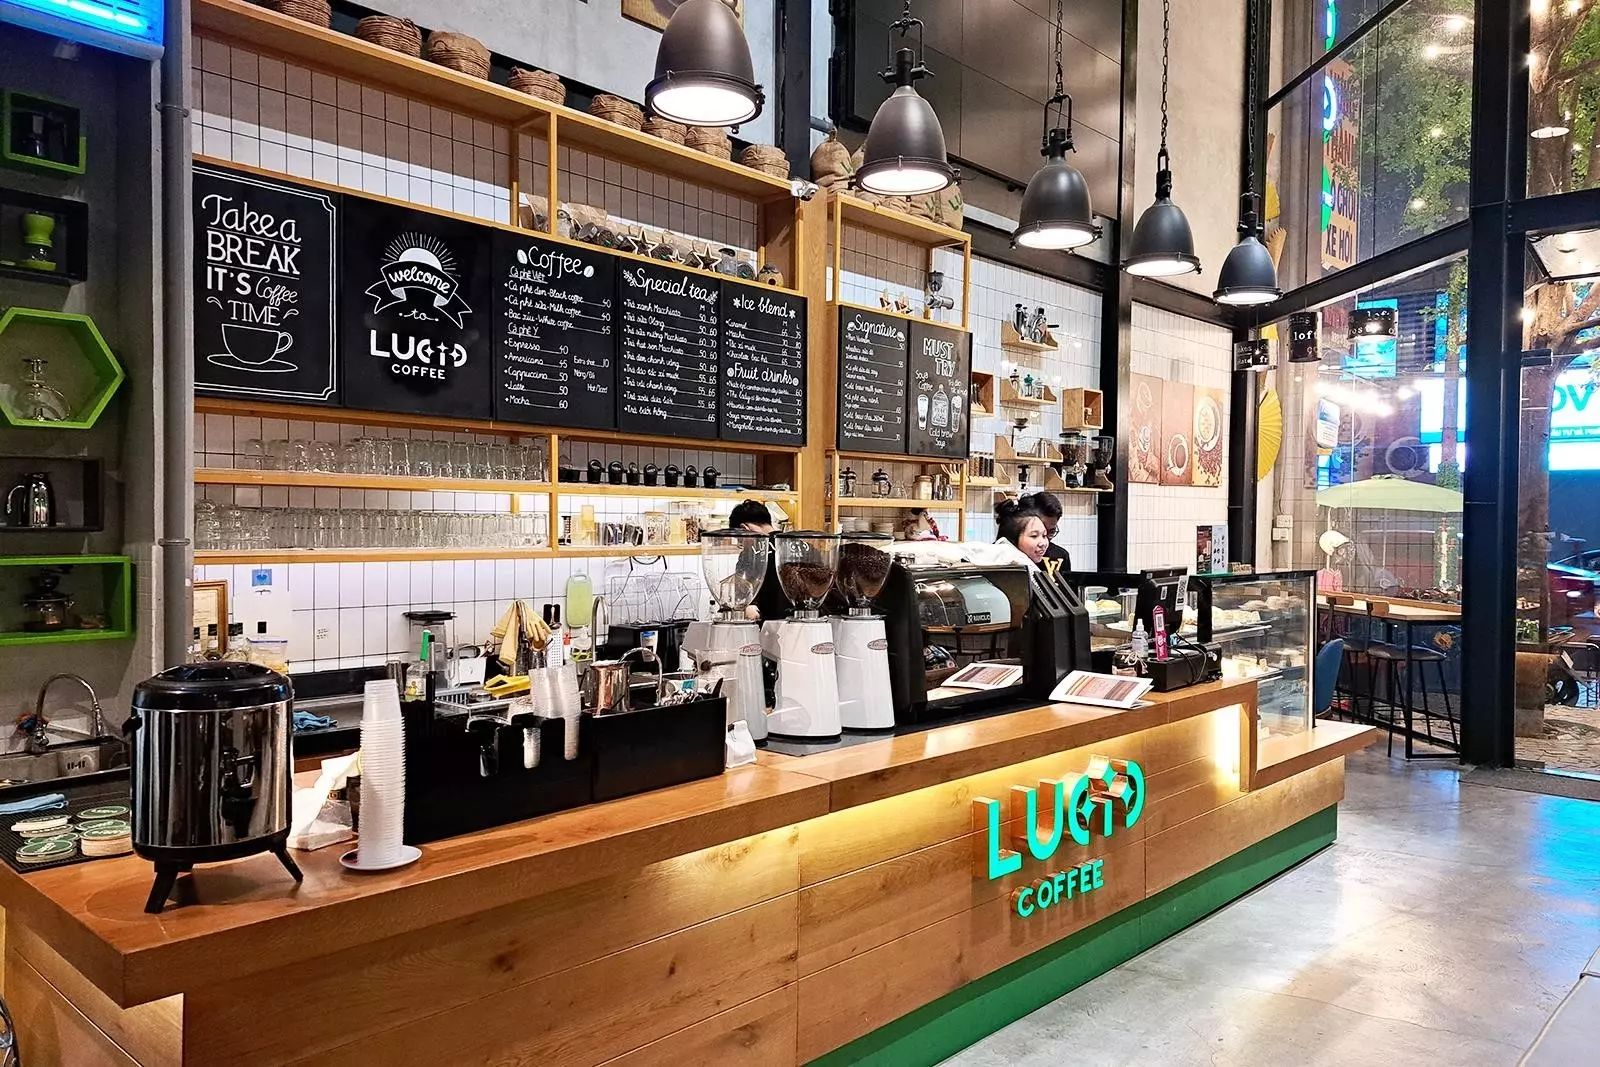 Lucid Coffee là một quán cà phê nổi tiếng, nổi bật với không gian sang trọng và phục vụ đa dạng các loại cà phê thượng hạng. Nơi đây còn được biết đến với đội ngũ nhân viên chuyên nghiệp và không gian thoải mái, tạo ra một trải nghiệm cà phê tuyệt vời cho khách hàng.